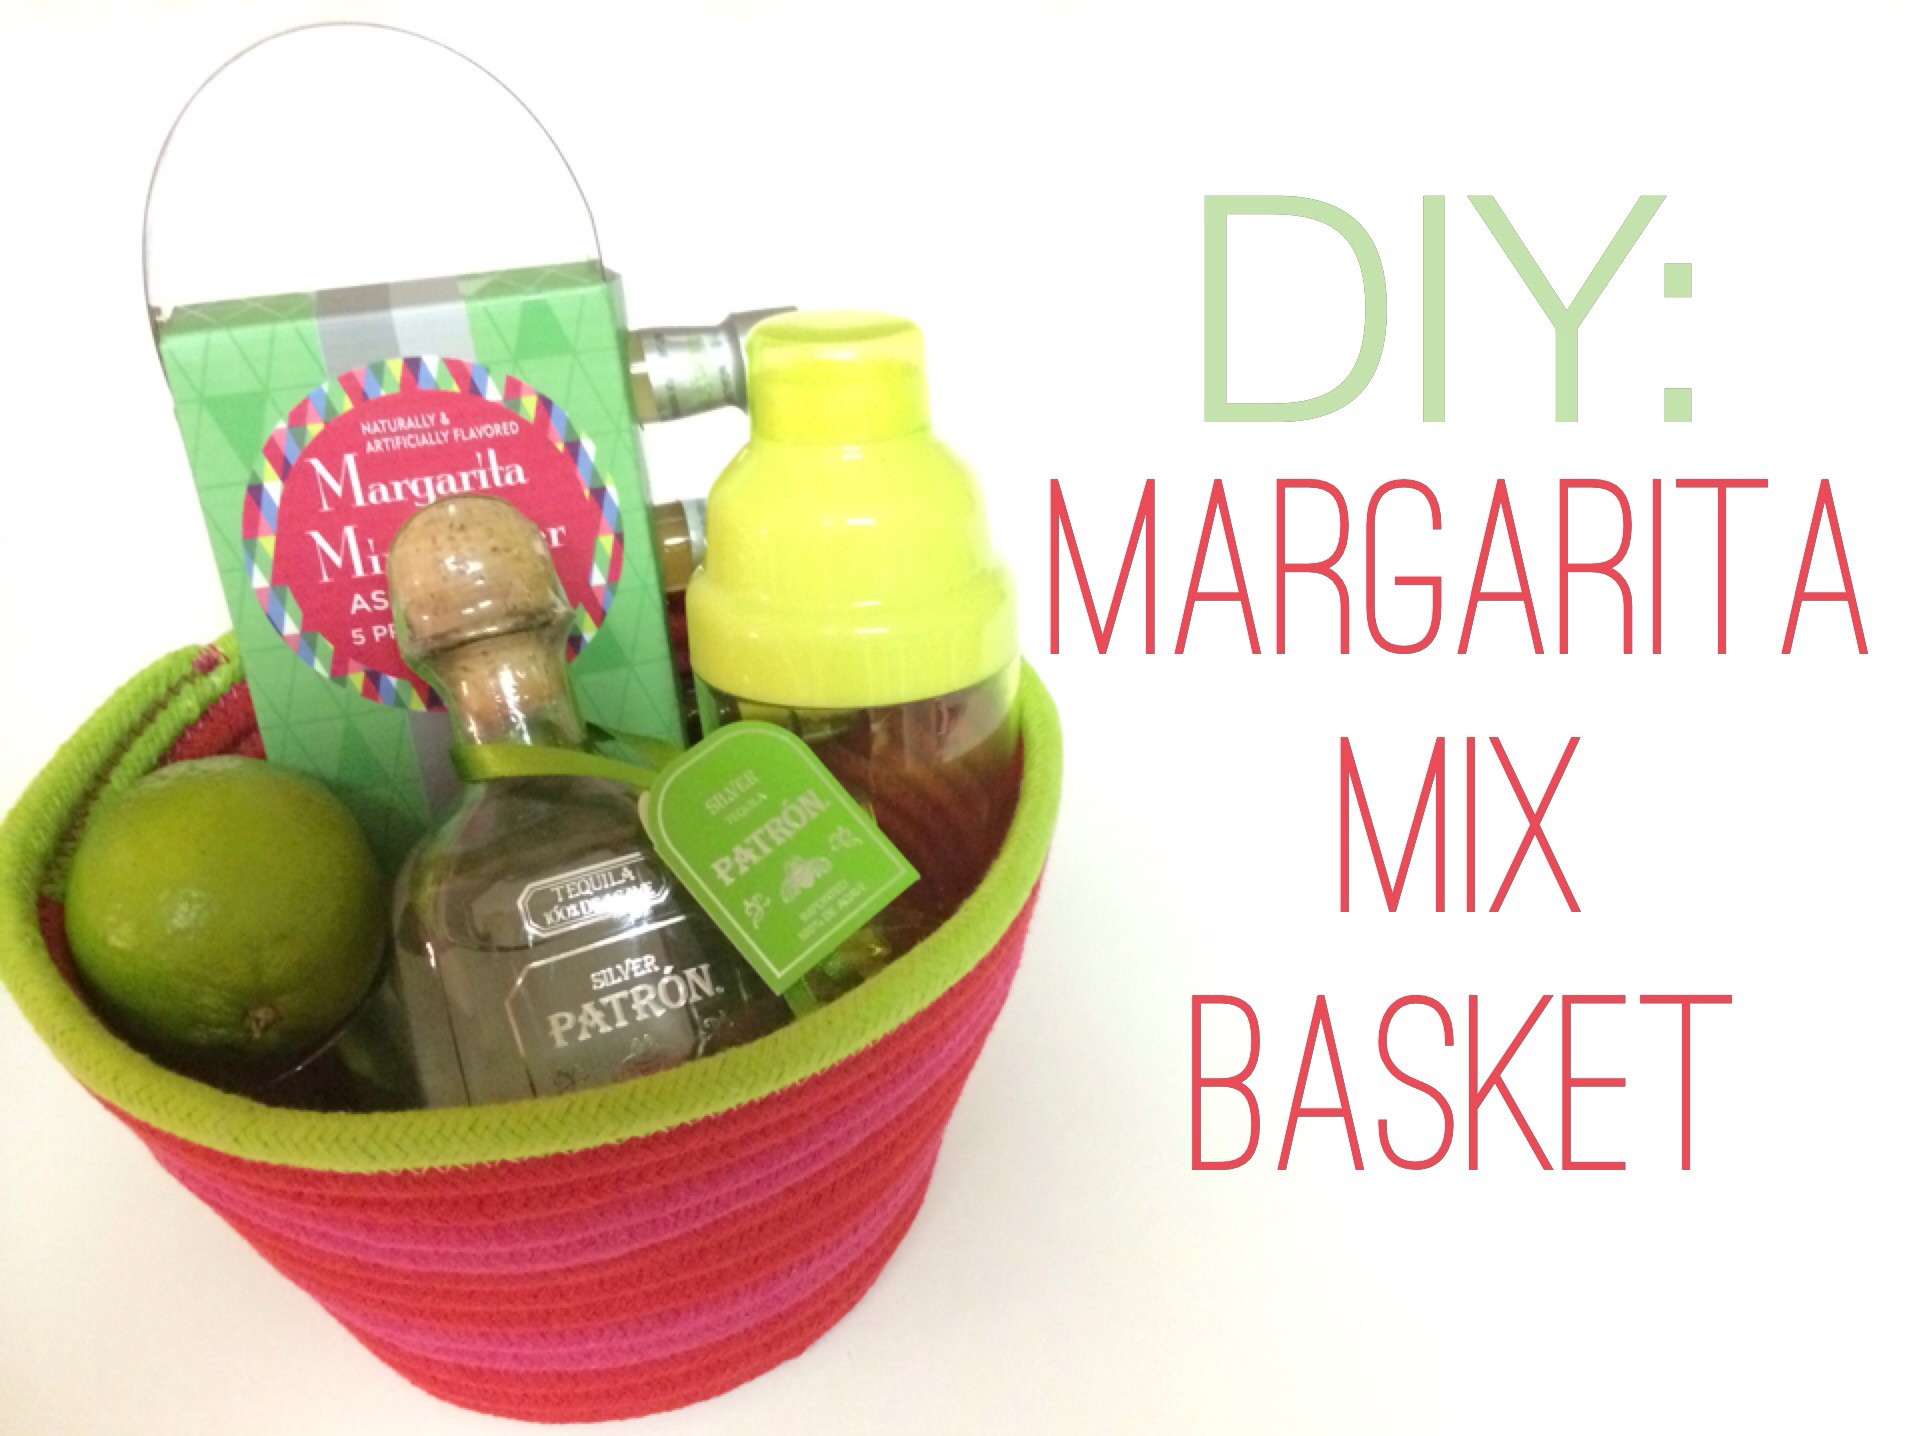 Margarita Gift Basket Ideas
 DIY Margarita Mix Basket – Ashes & Wine